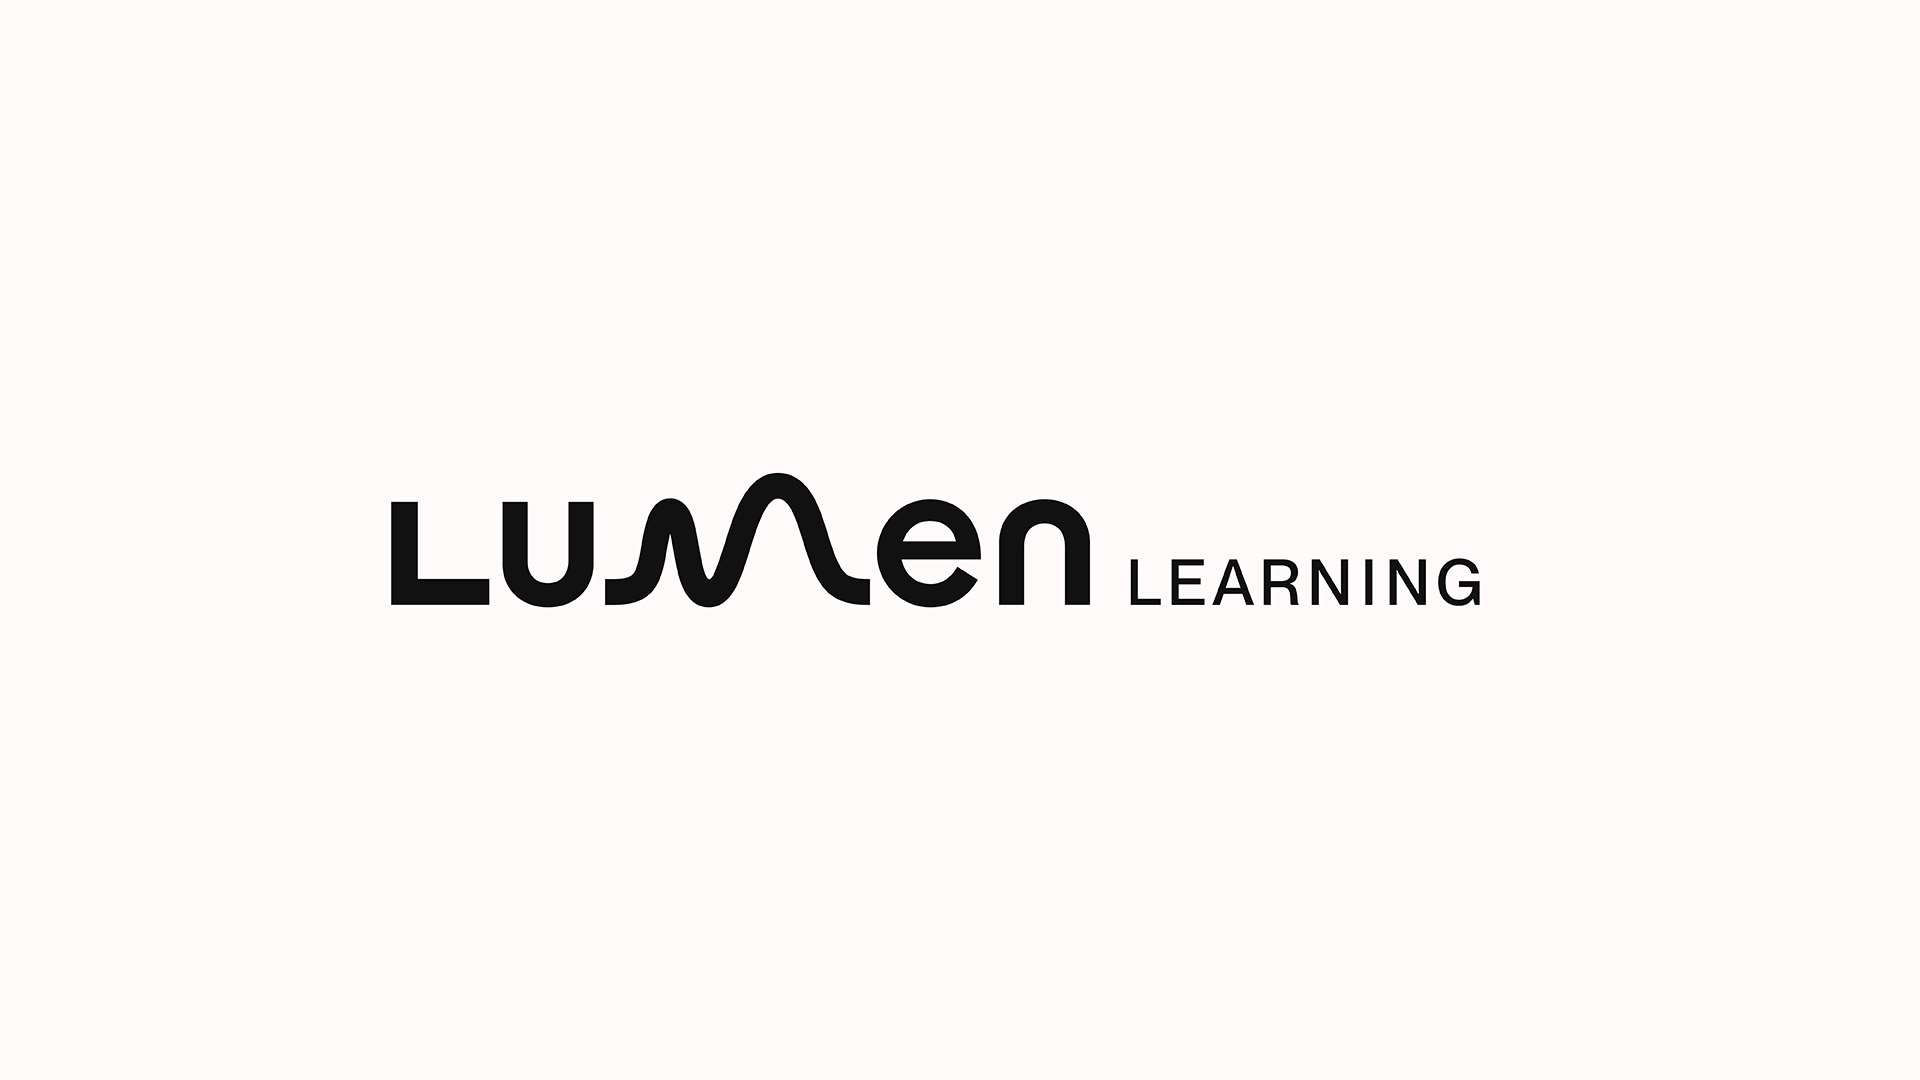 Lumen Learning Rebrand